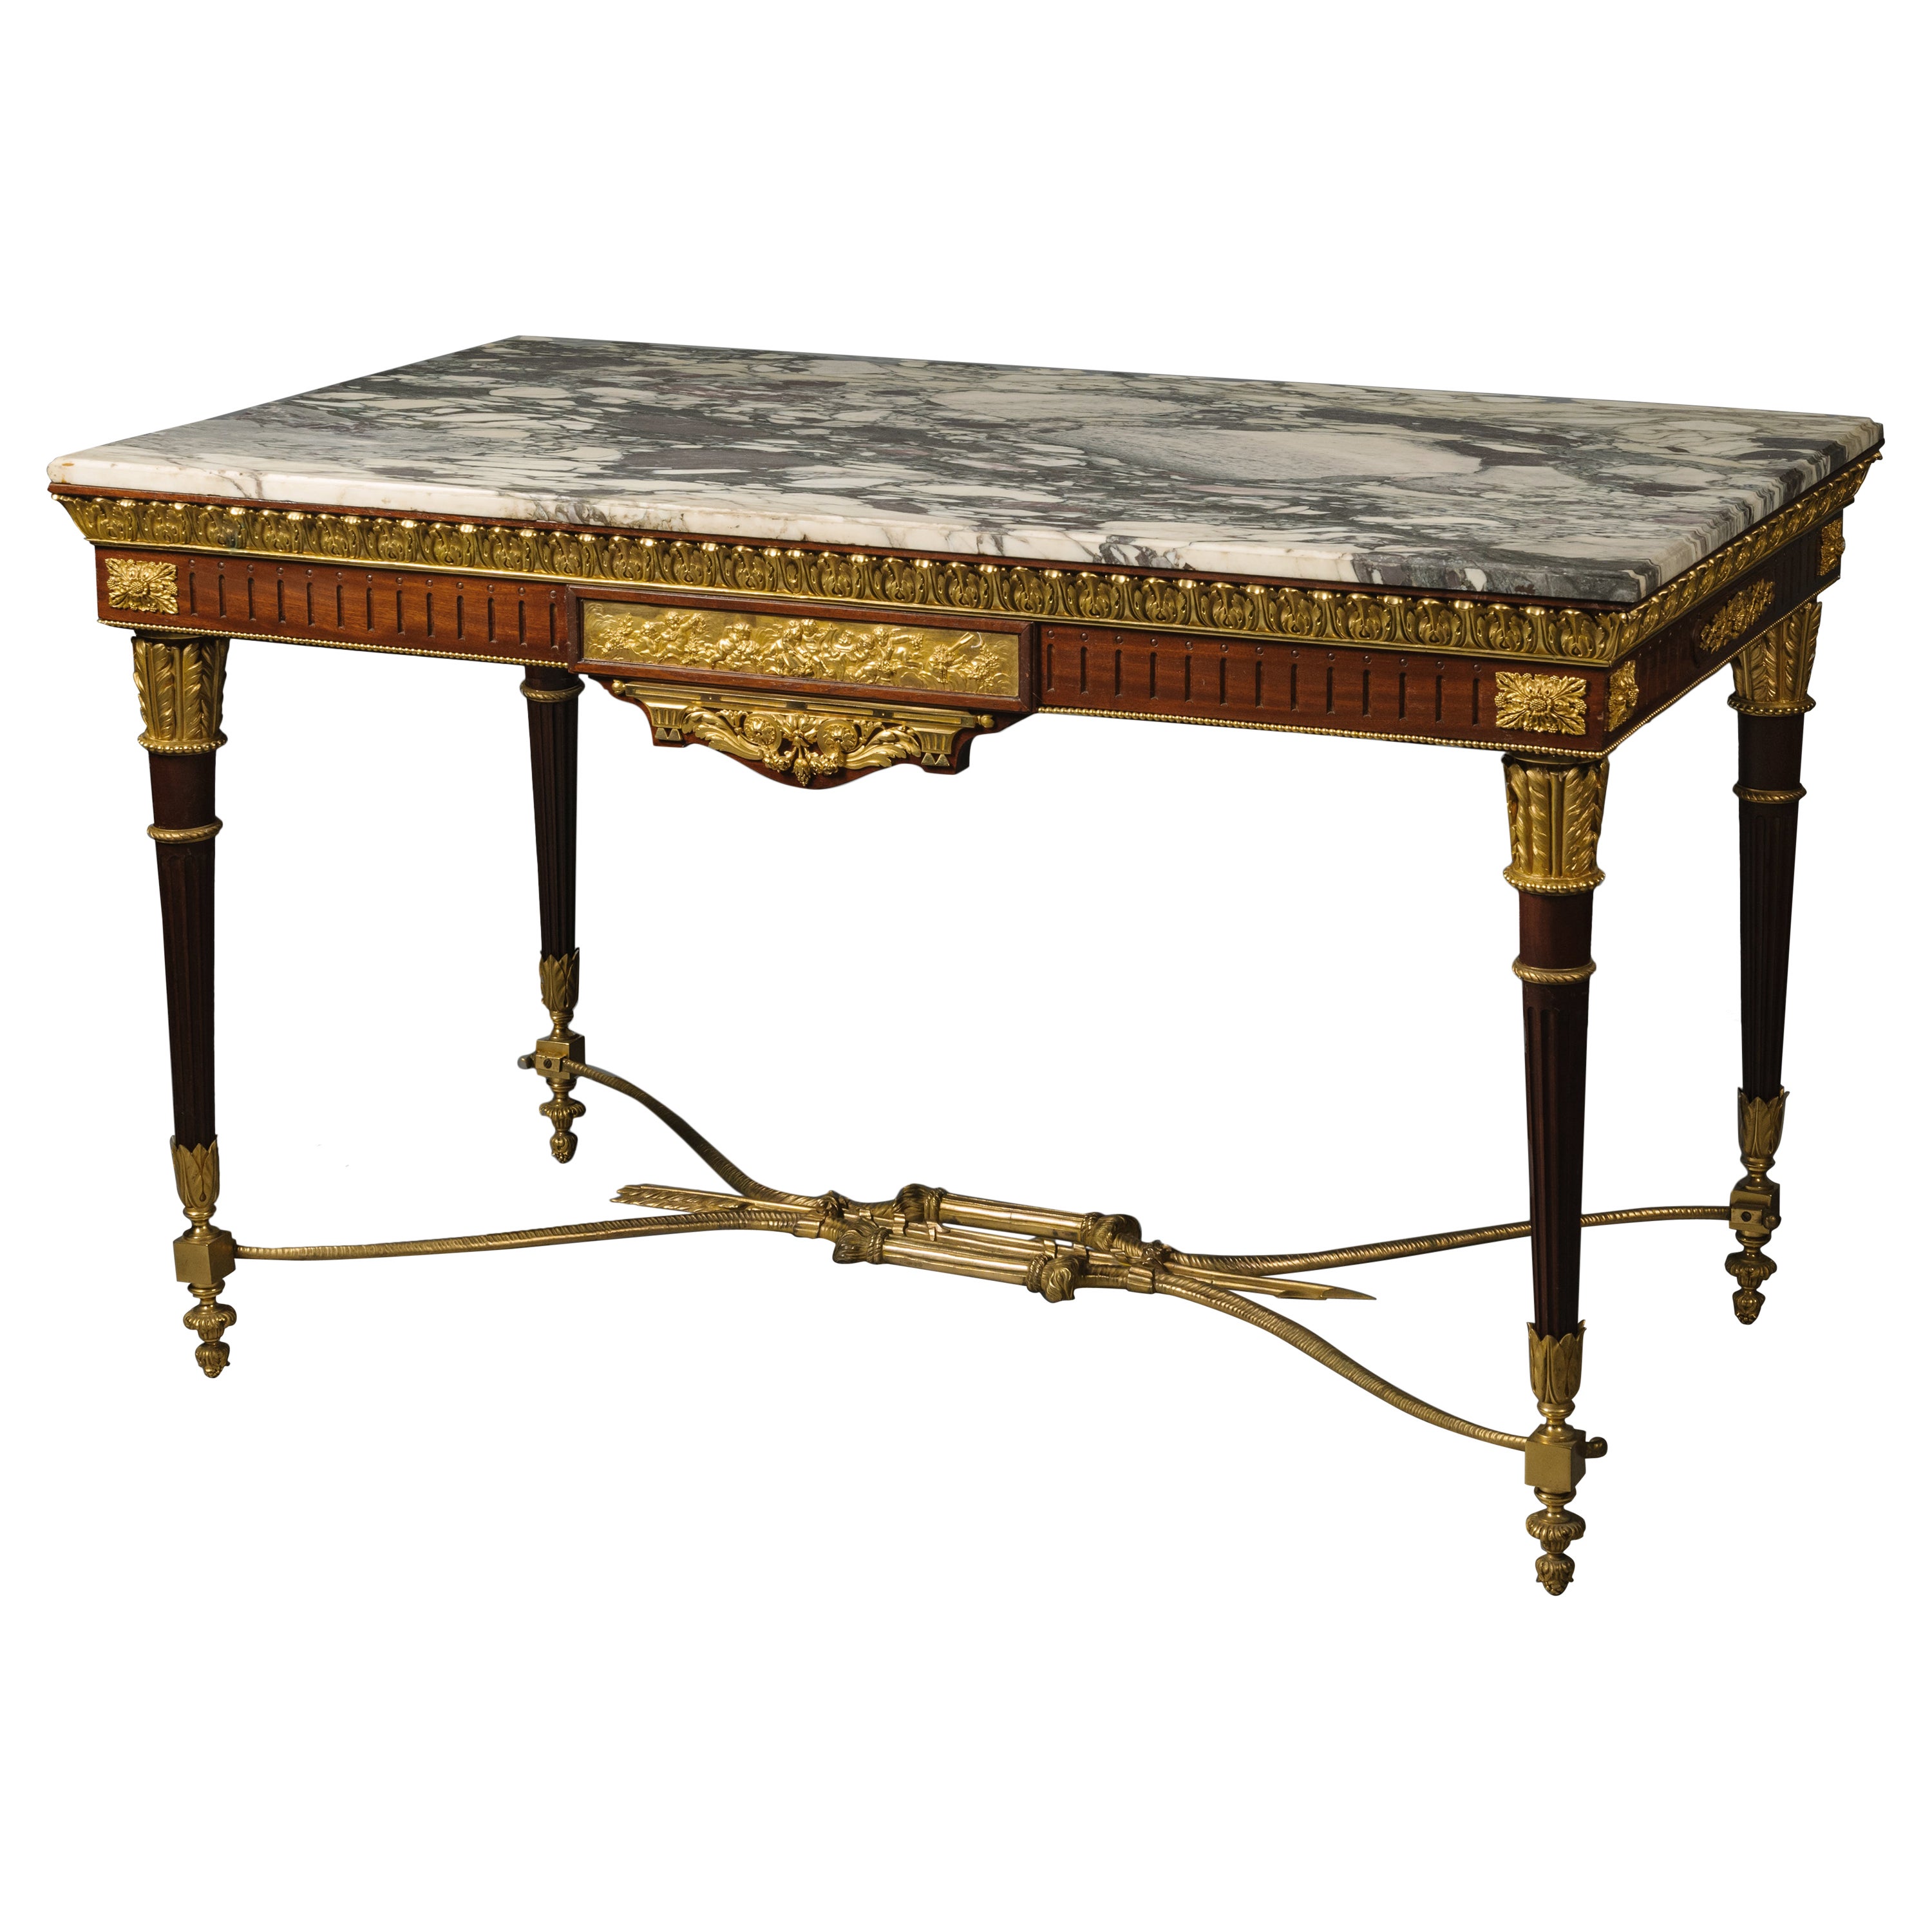 Table centrale de style Louis XVI montée en bronze doré